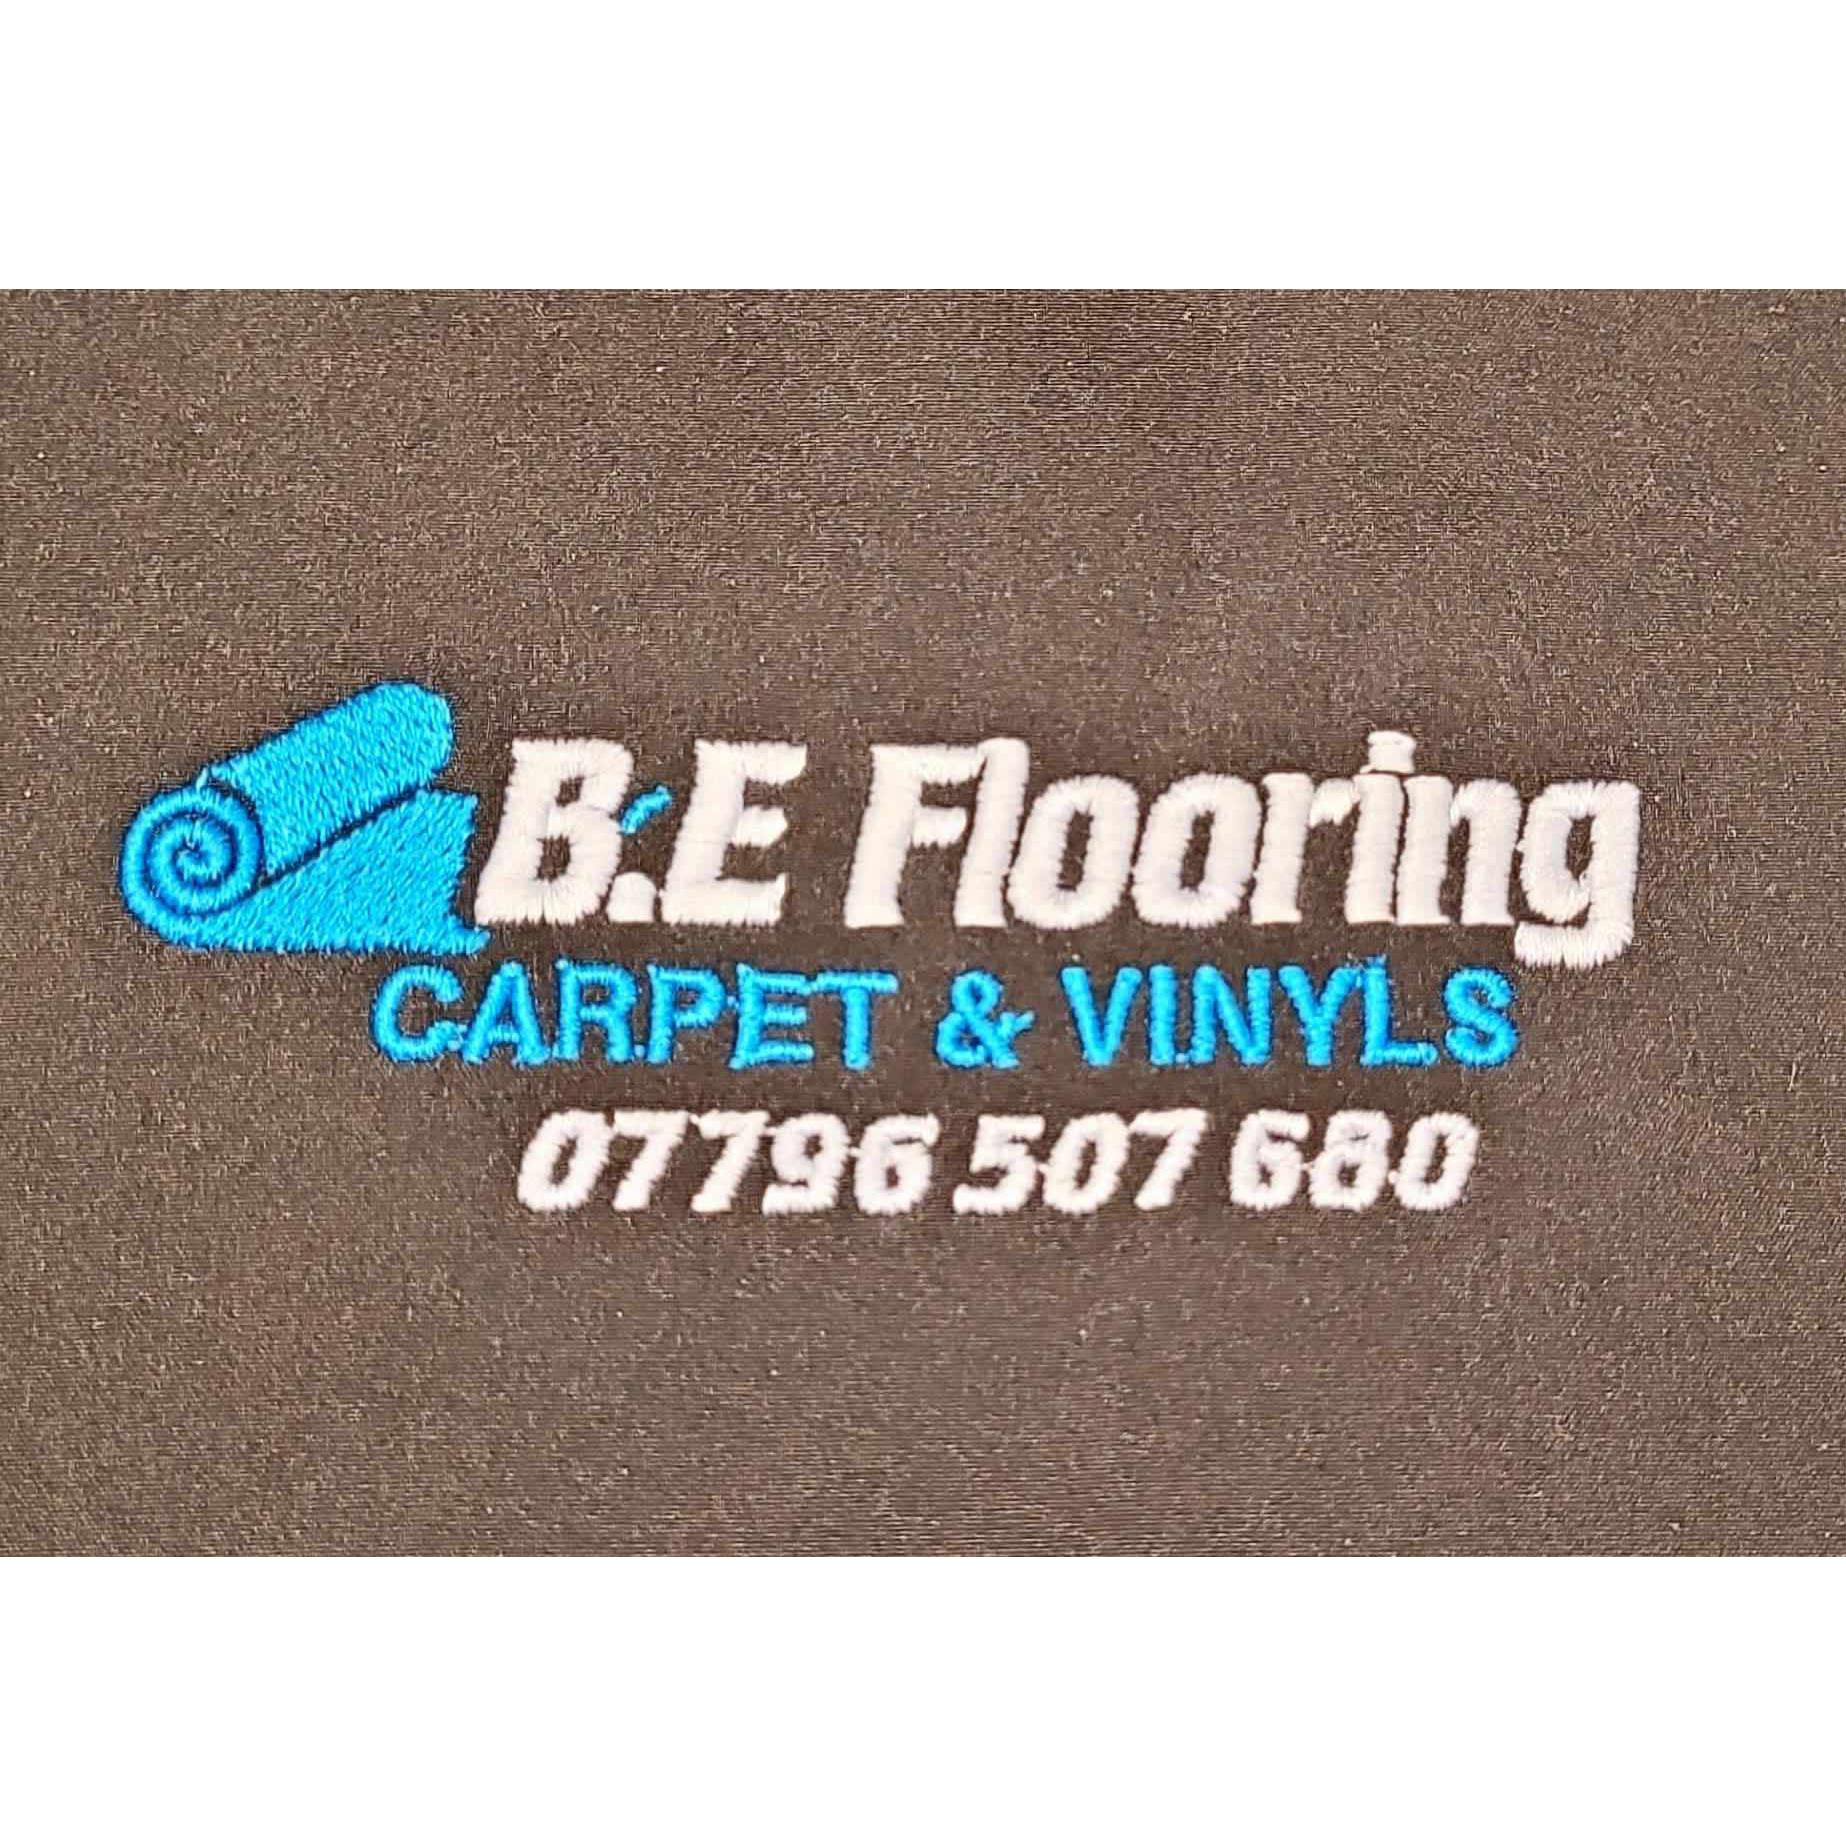 B.E Flooring - Ballymena, County Antrim BT42 1HE - 07796 507680 | ShowMeLocal.com